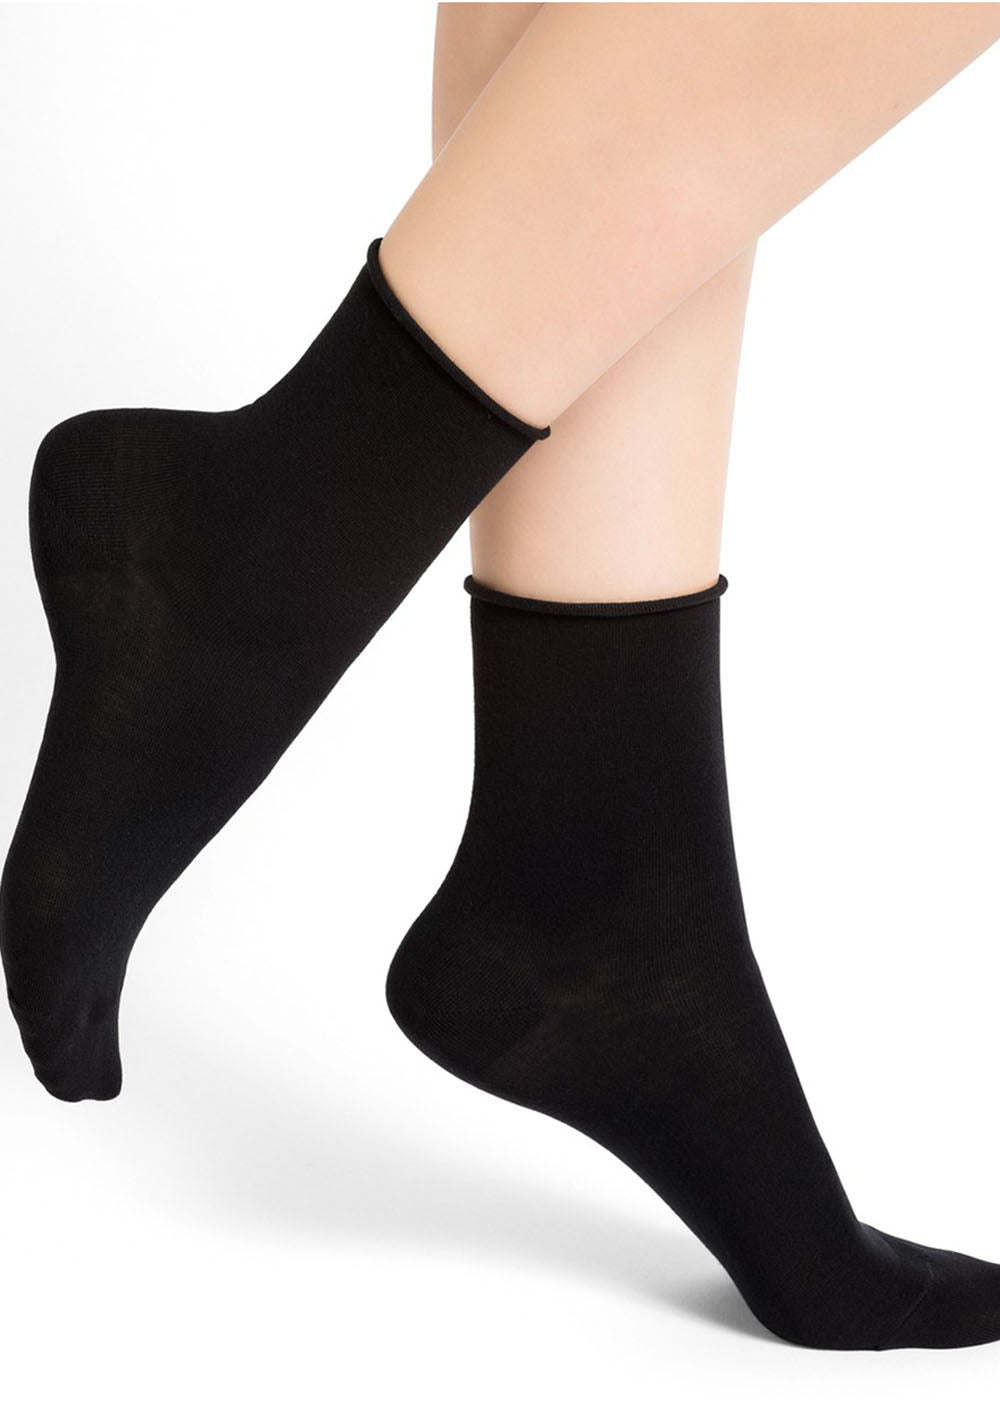 Velvet Cotton Ankle Socks - Black - Bleuforêt Canada - Danali